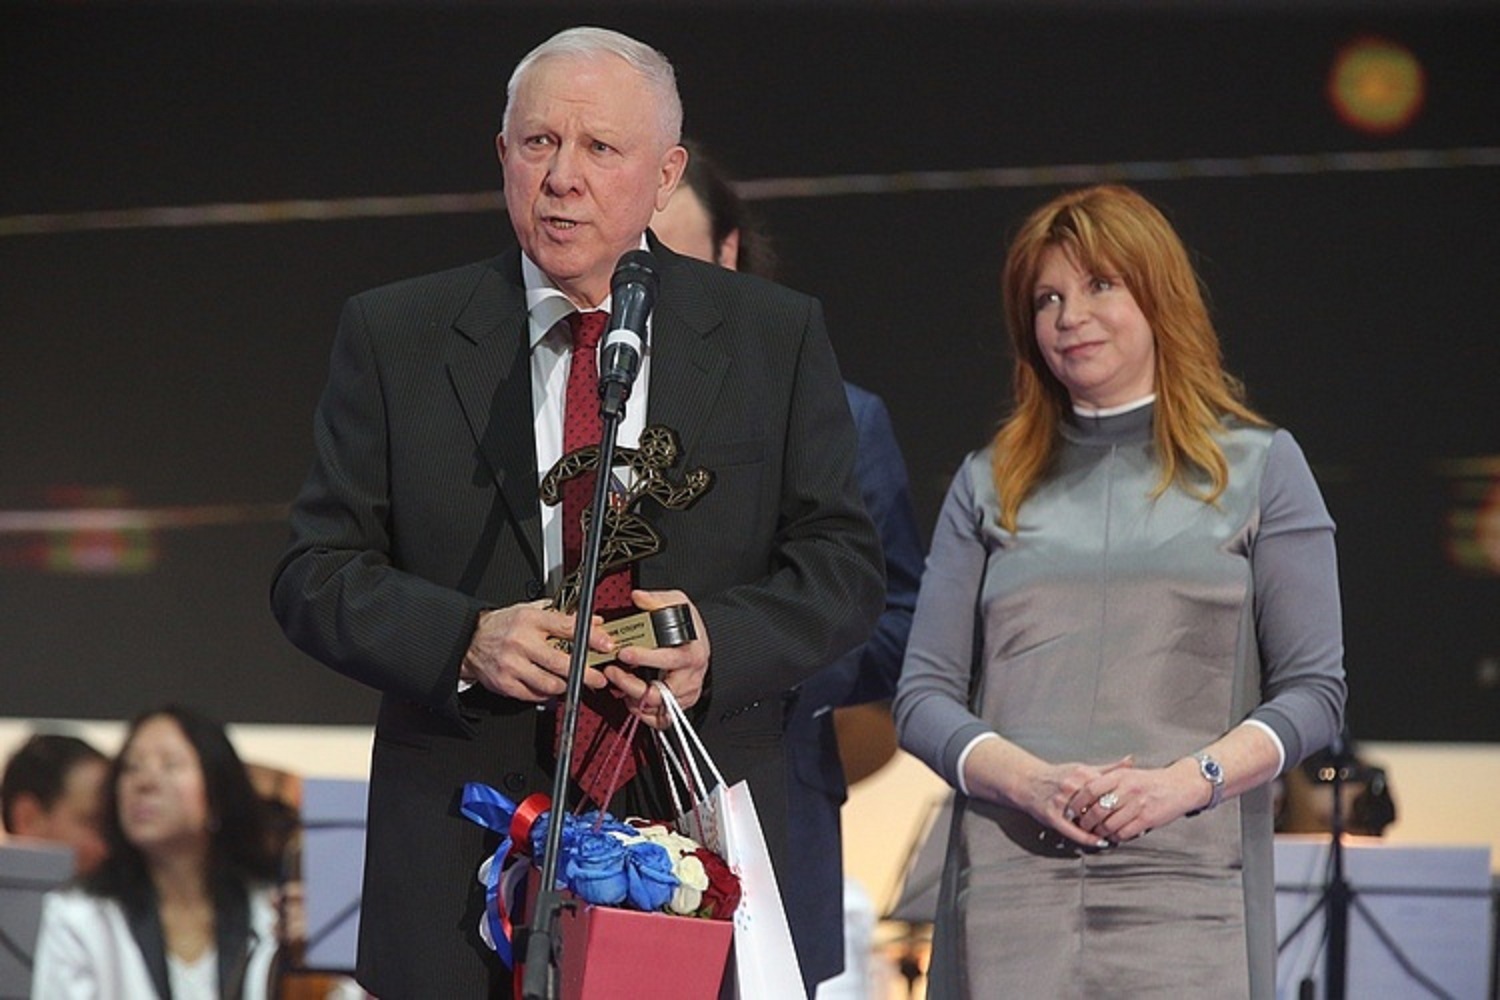 "За служение спорту" кубанский ученый получил престижную государственную премию пресс-служба администрации Краснодарского края